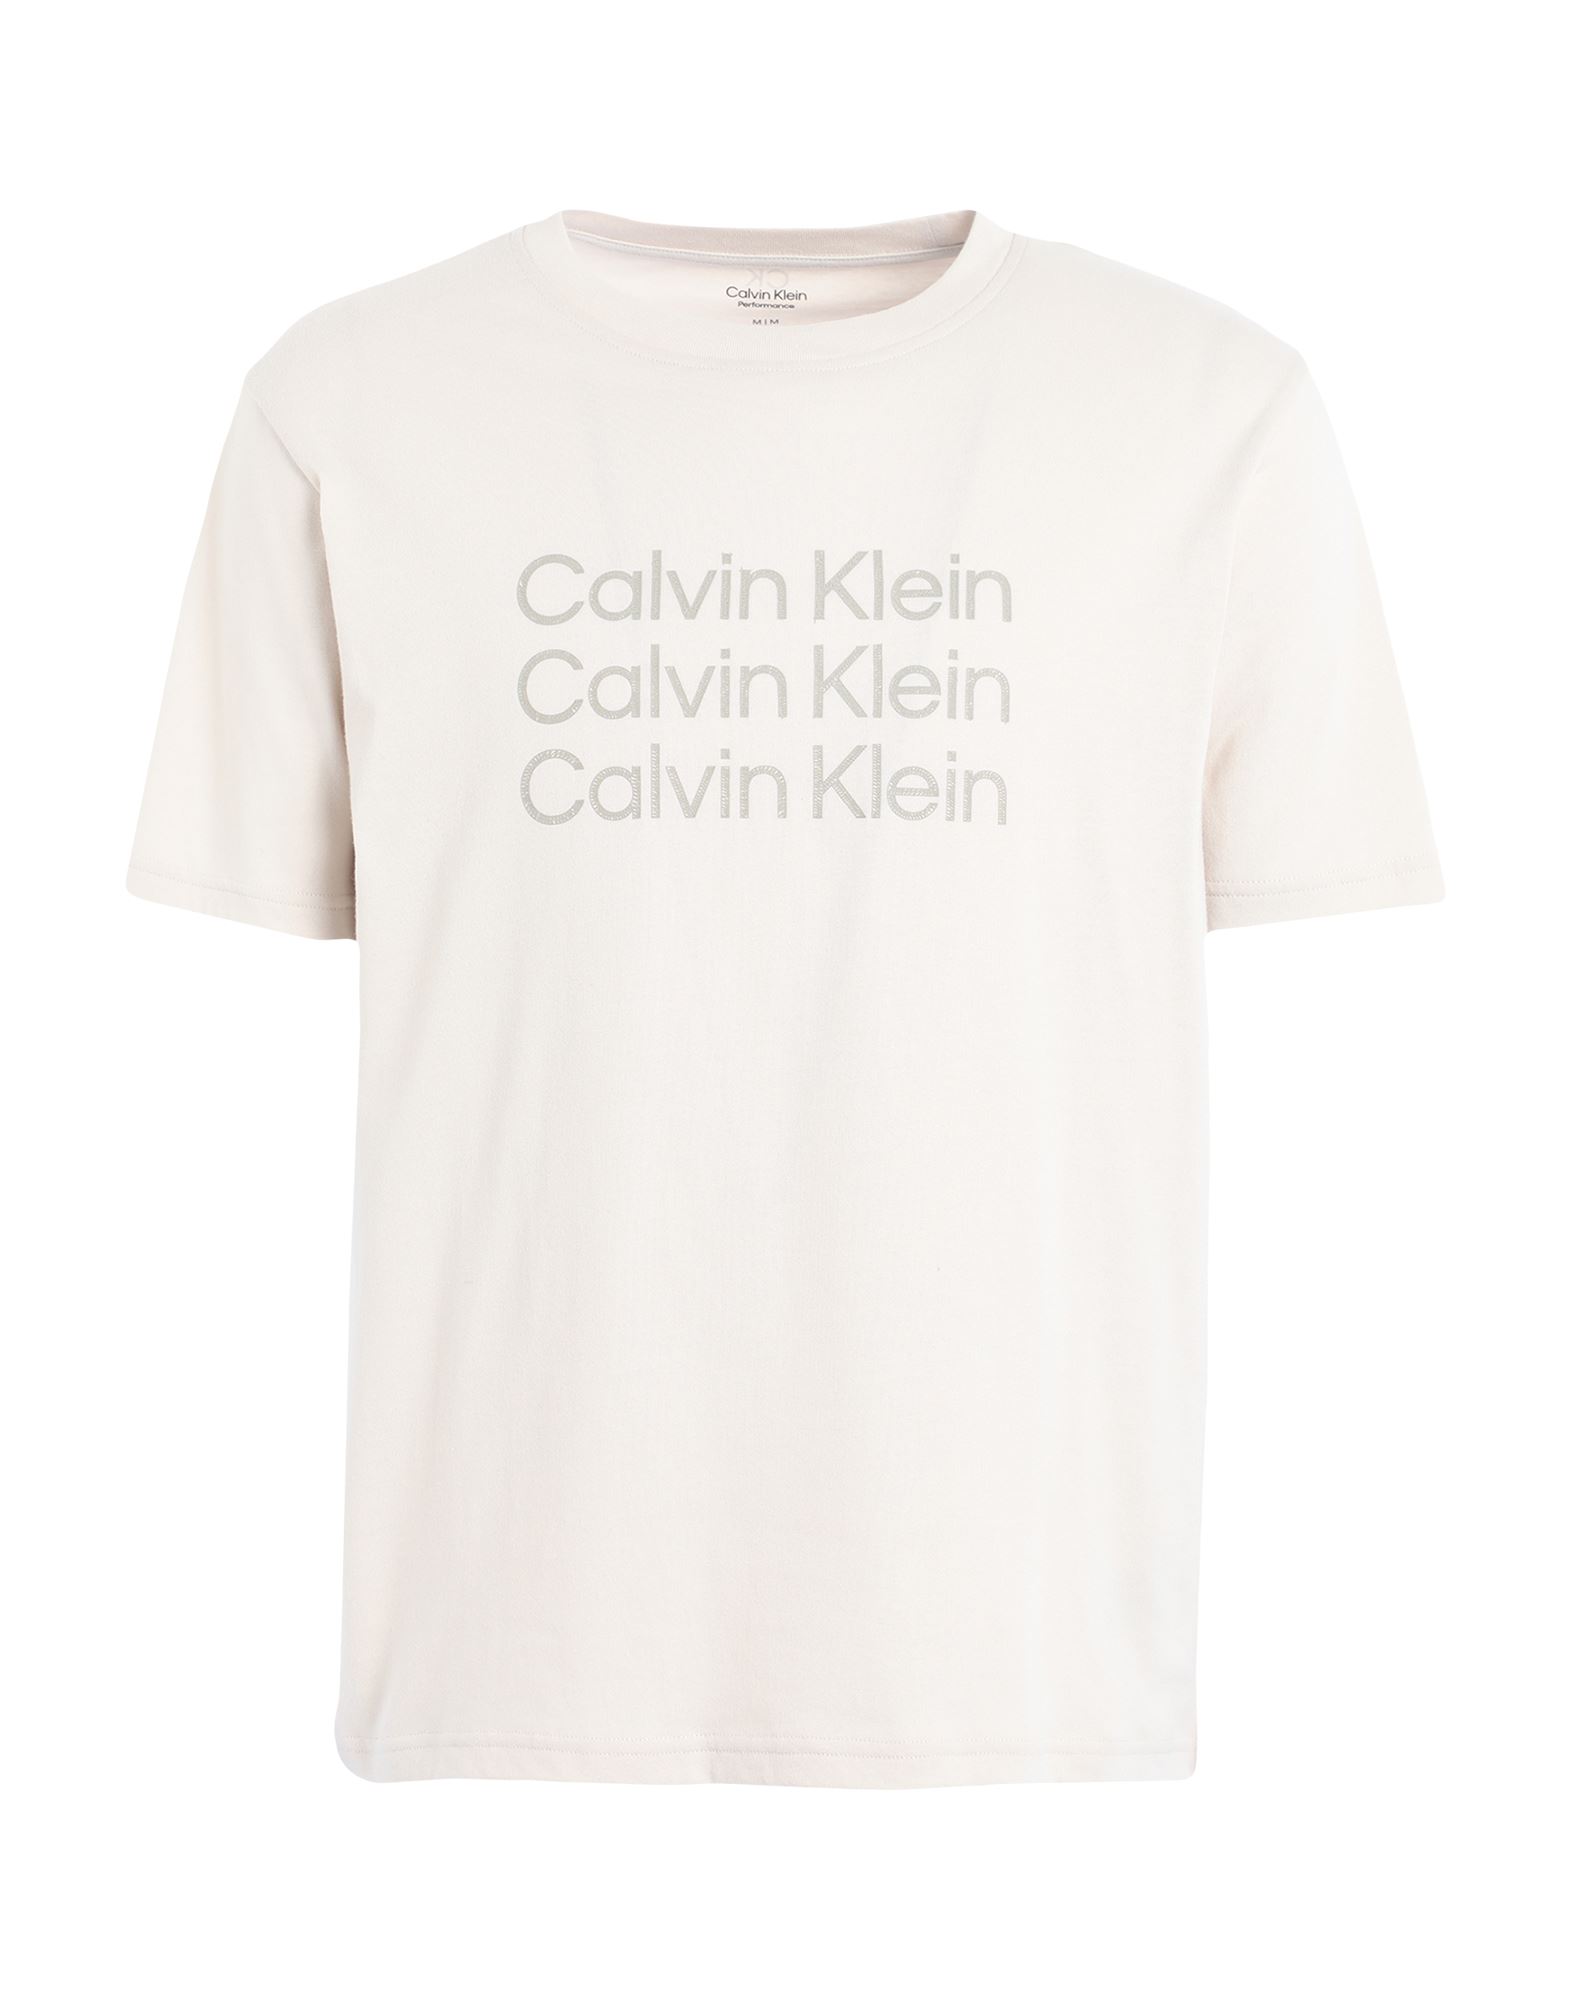 CALVIN KLEIN PERFORMANCE T-shirts Herren Beige von CALVIN KLEIN PERFORMANCE